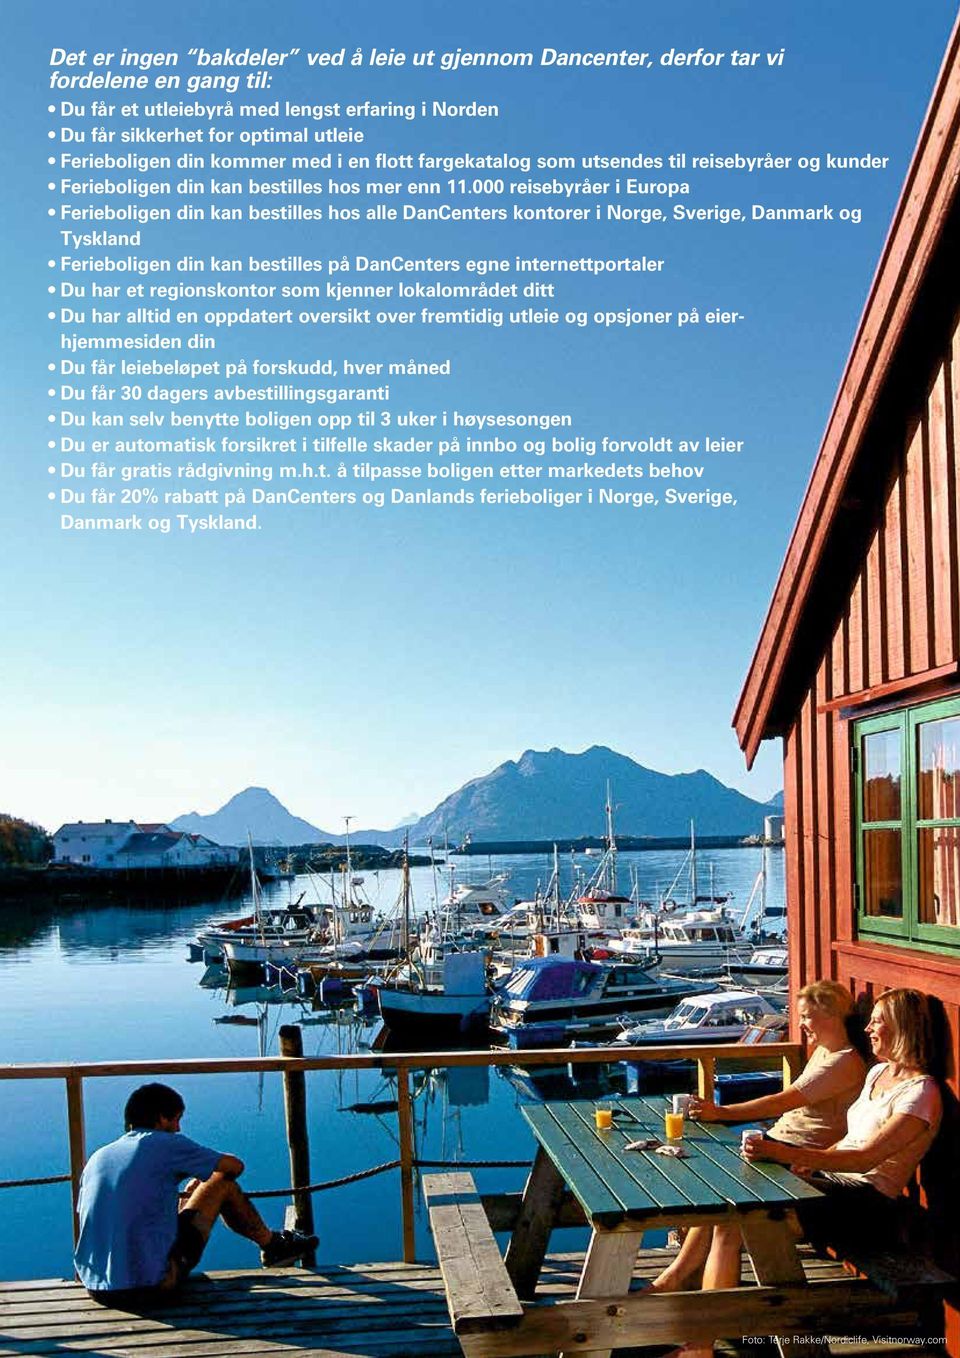 000 reisebyråer i Europa Ferieboligen din kan bestilles hos alle DanCenters kontorer i Norge, Sverige, Danmark og Tyskland Ferieboligen din kan bestilles på DanCenters egne internettportaler Du har